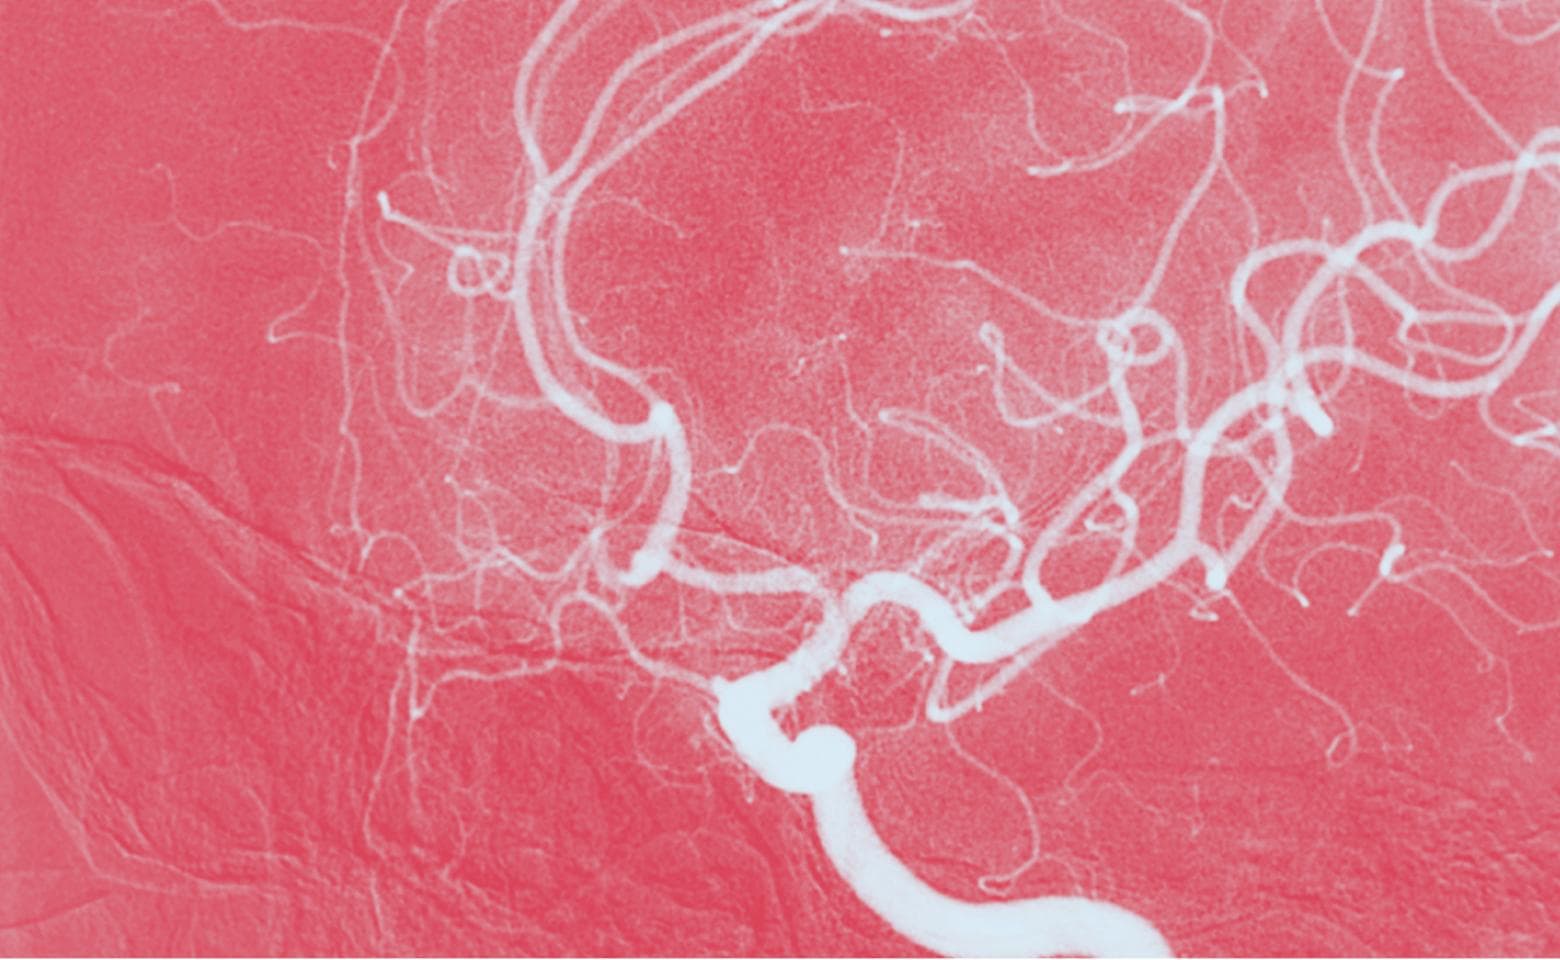 Immagine DSA dell'arteria carotide interna